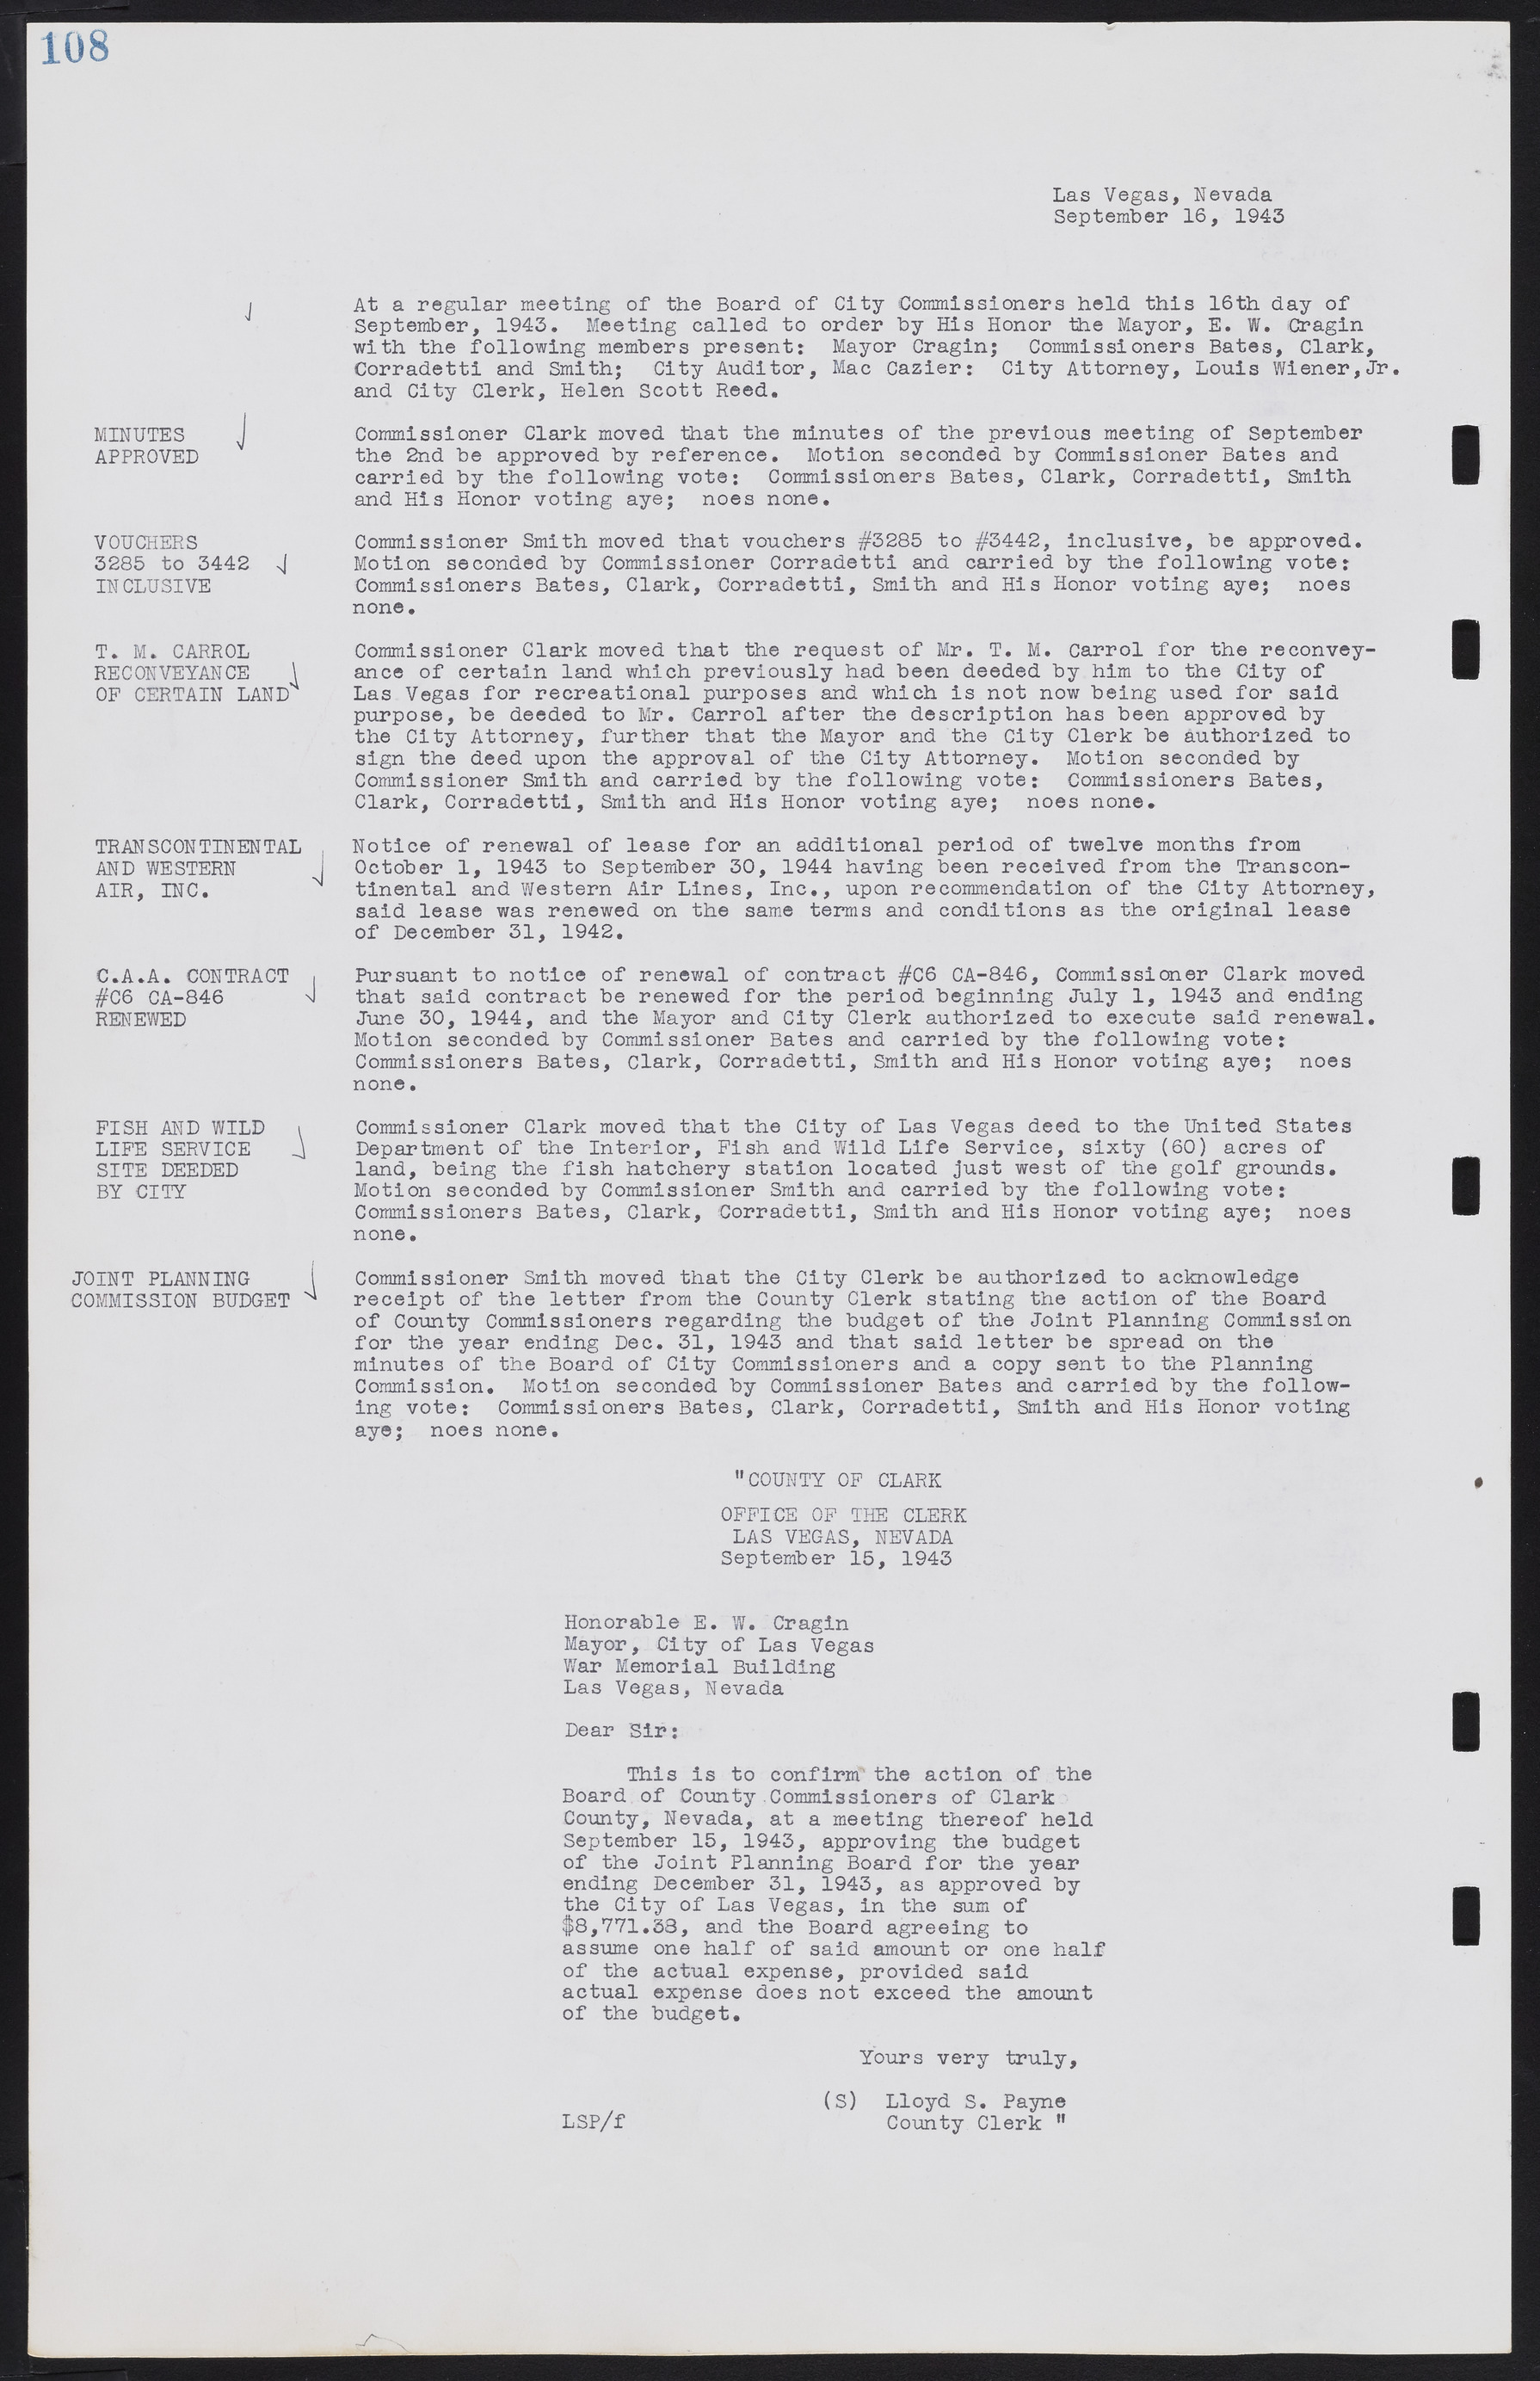 Las Vegas City Commission Minutes, August 11, 1942 to December 30, 1946, lvc000005-122